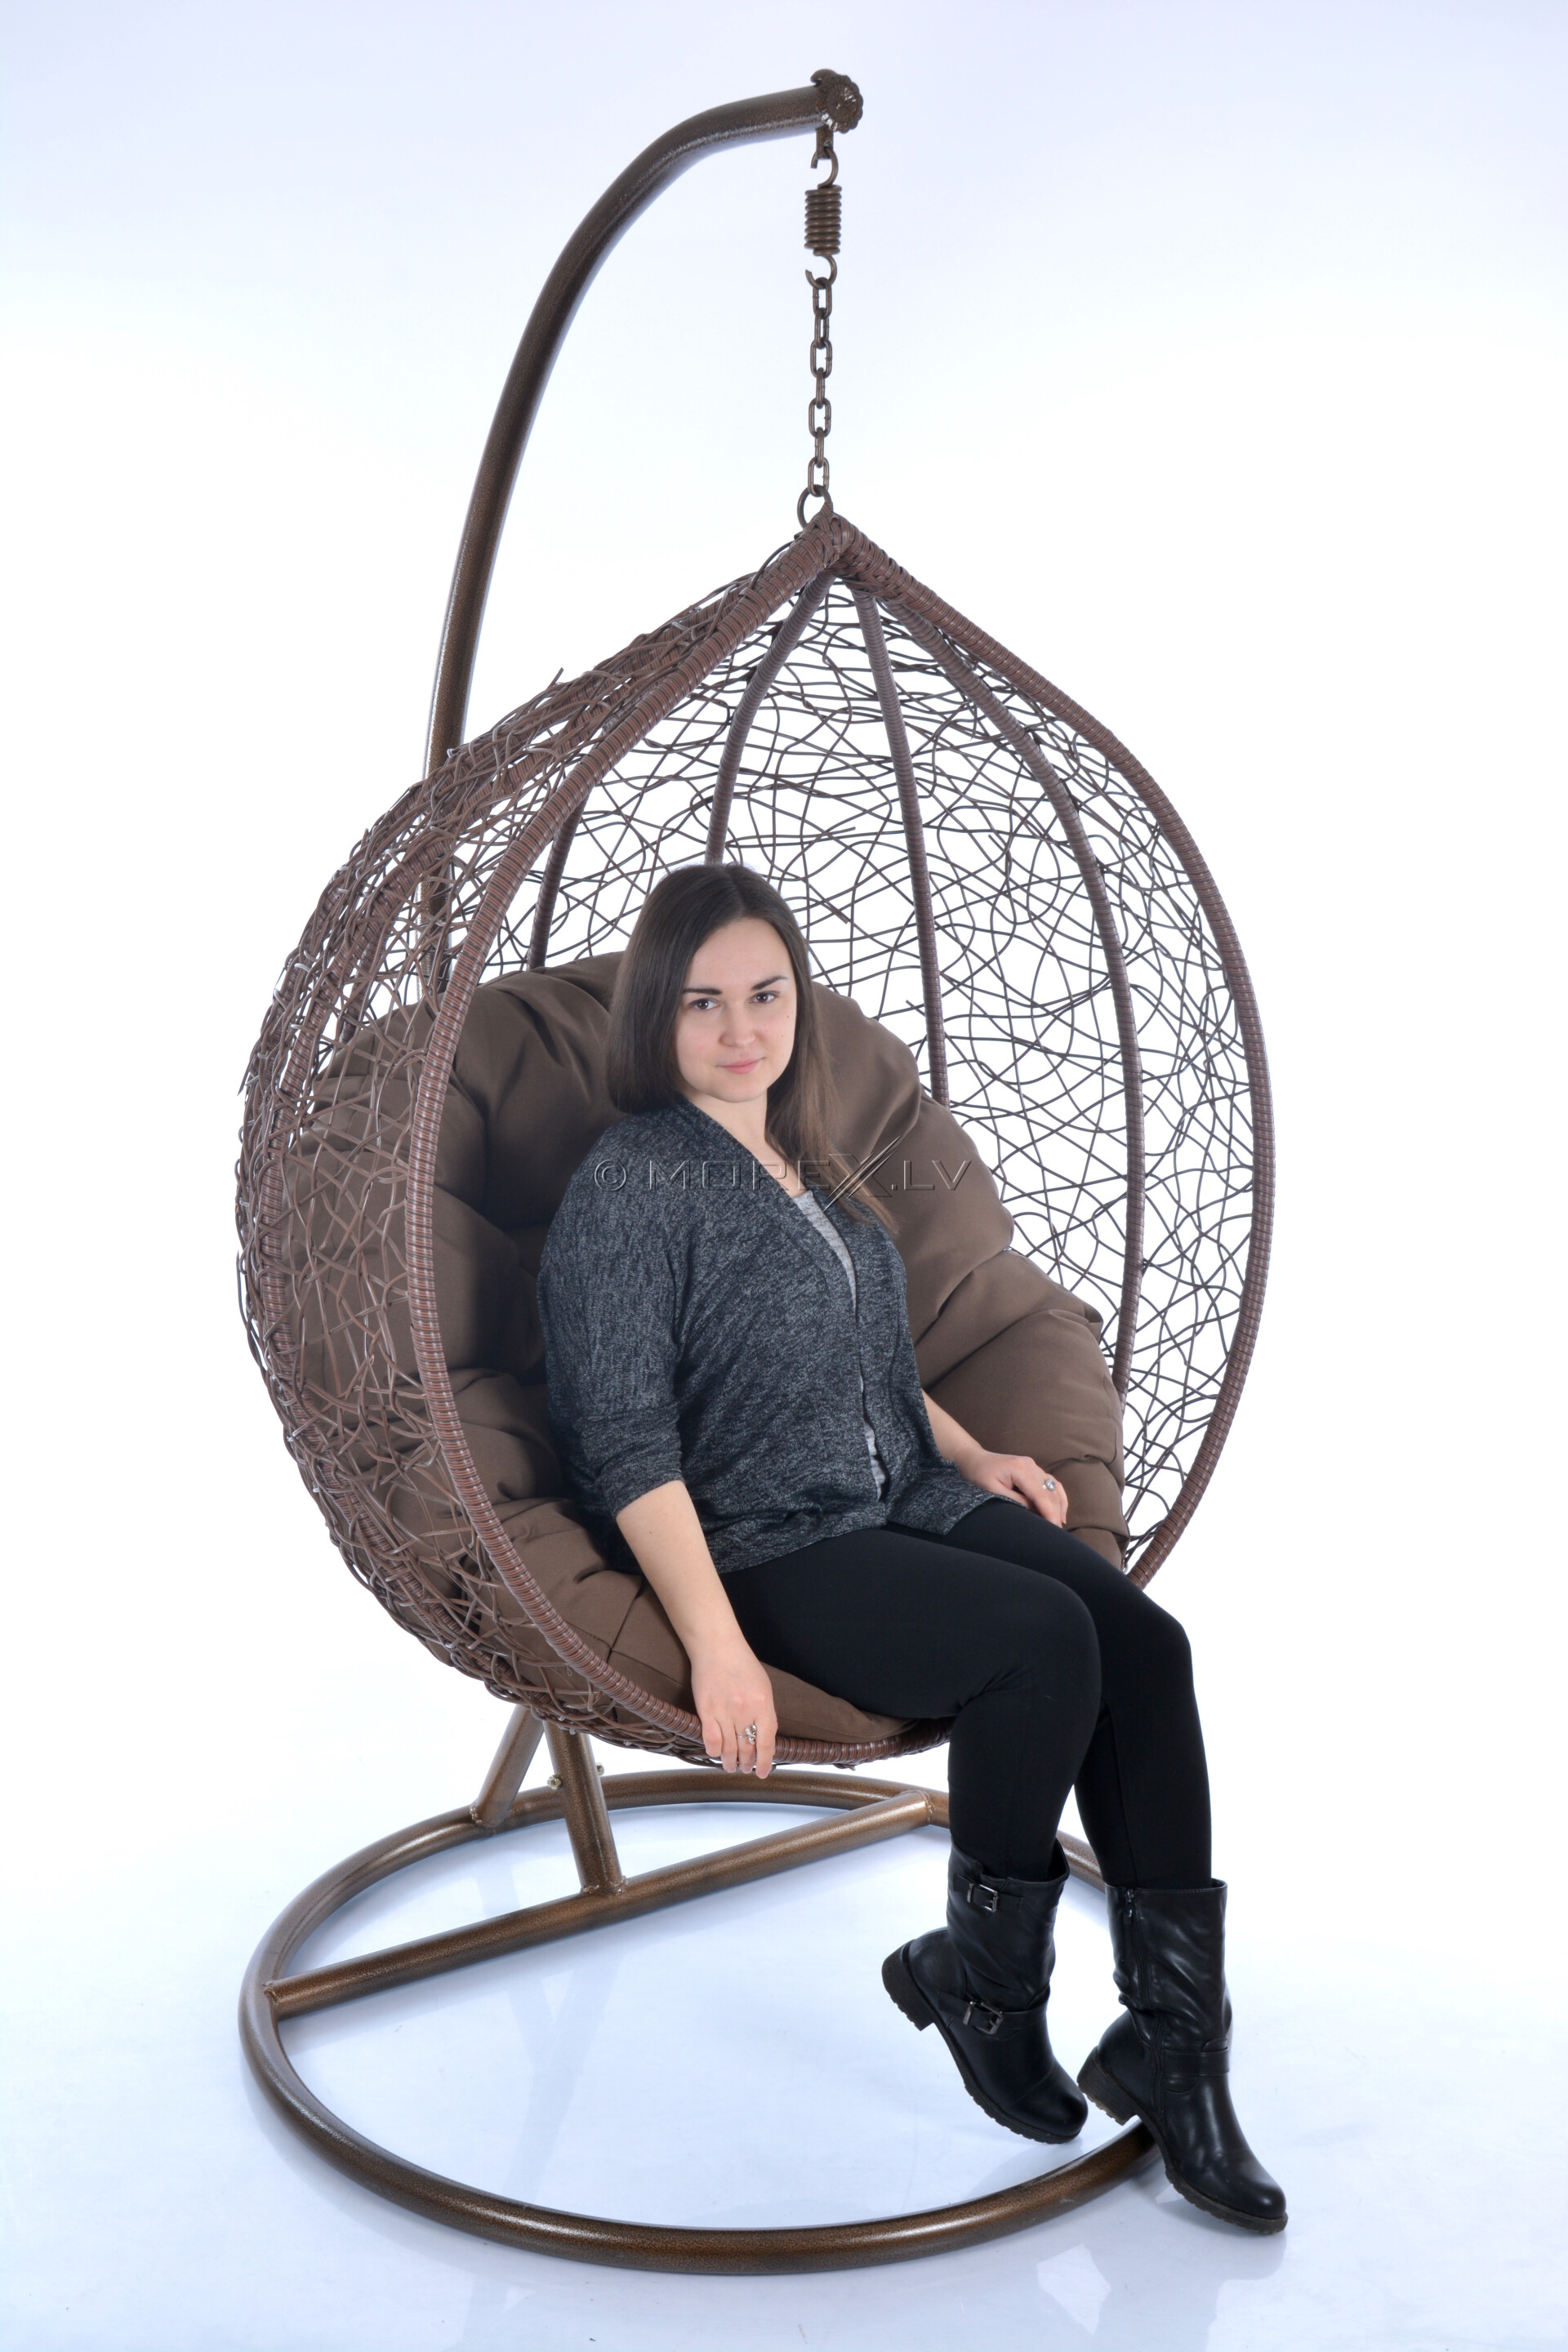 Дизайнерская мебель кресло яйцо